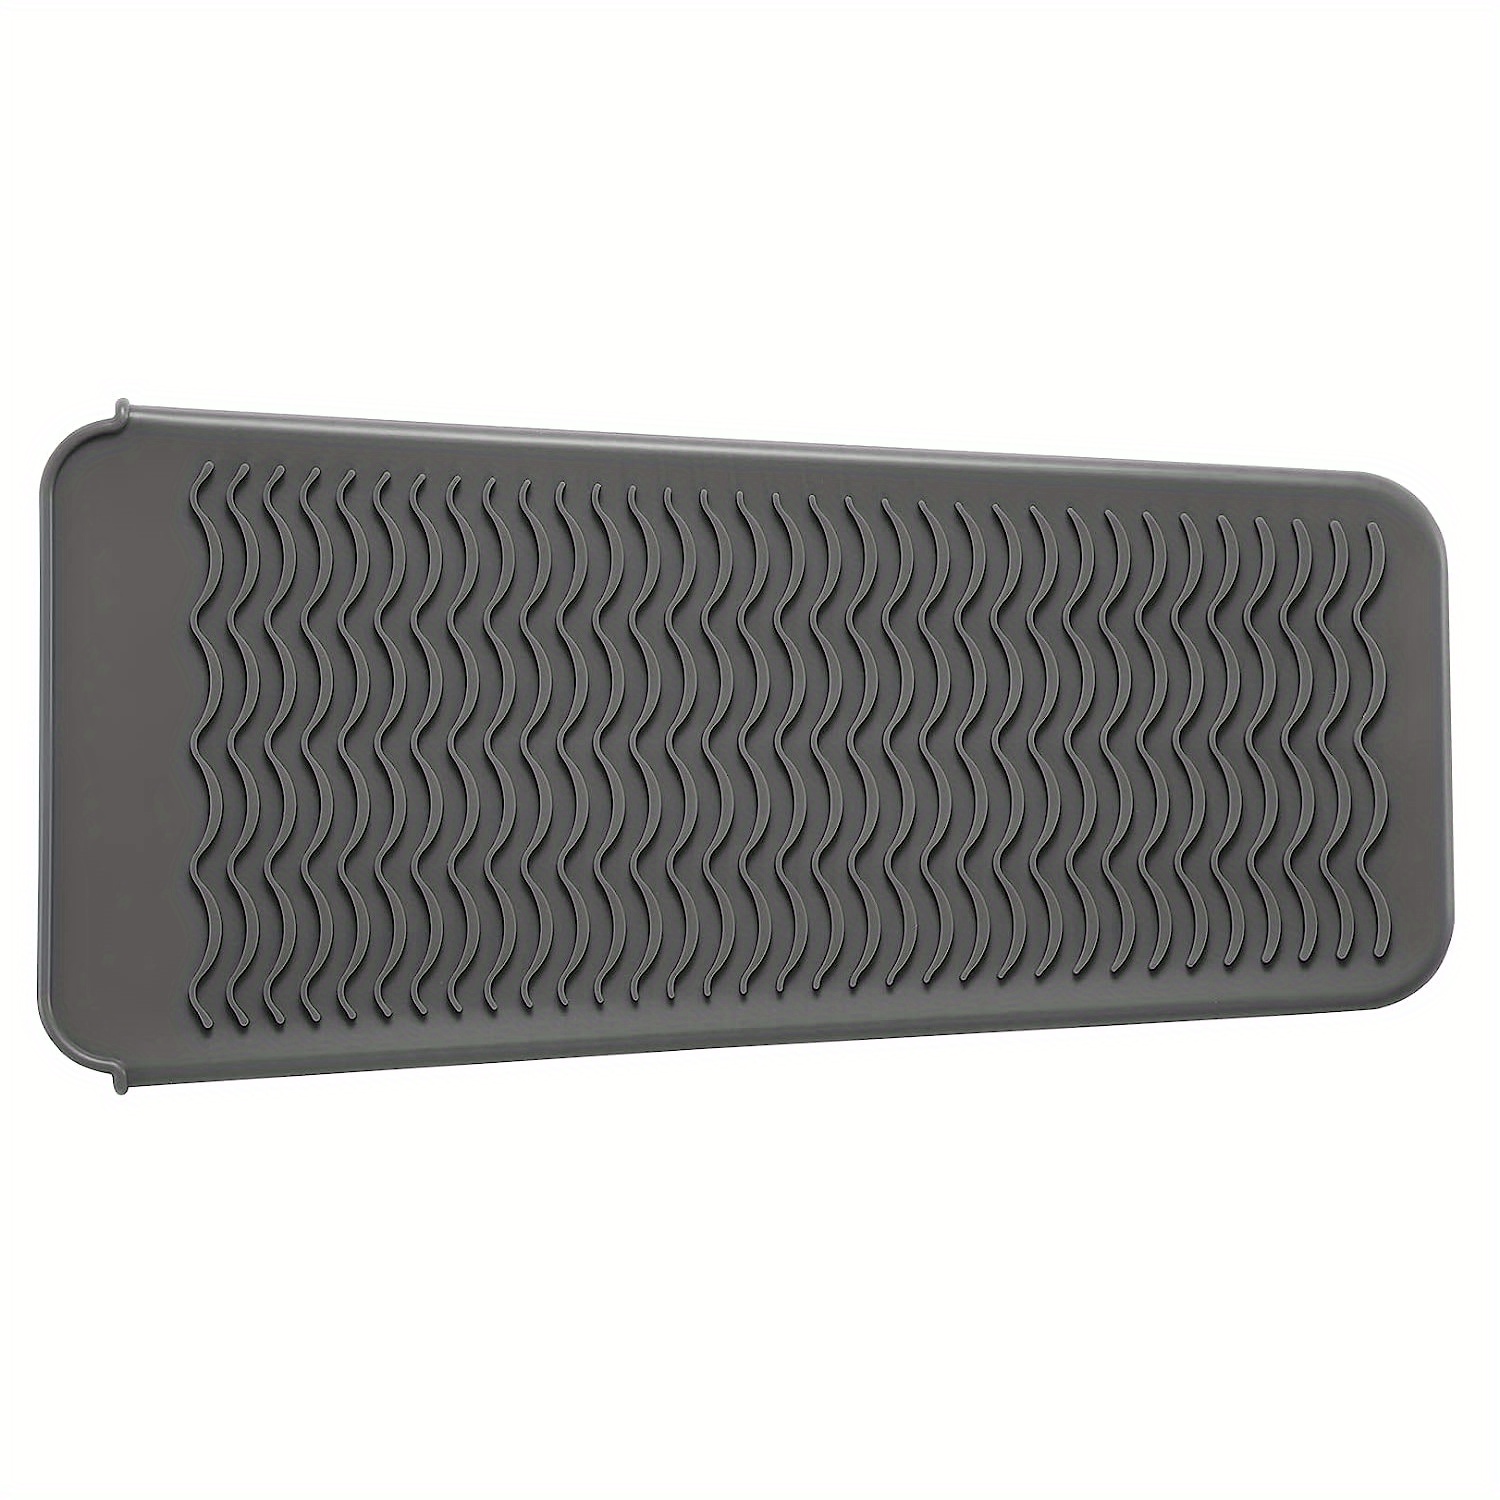 SmellRose Hair Iron Mat & Pouch, Professional Heat Resistant Mat